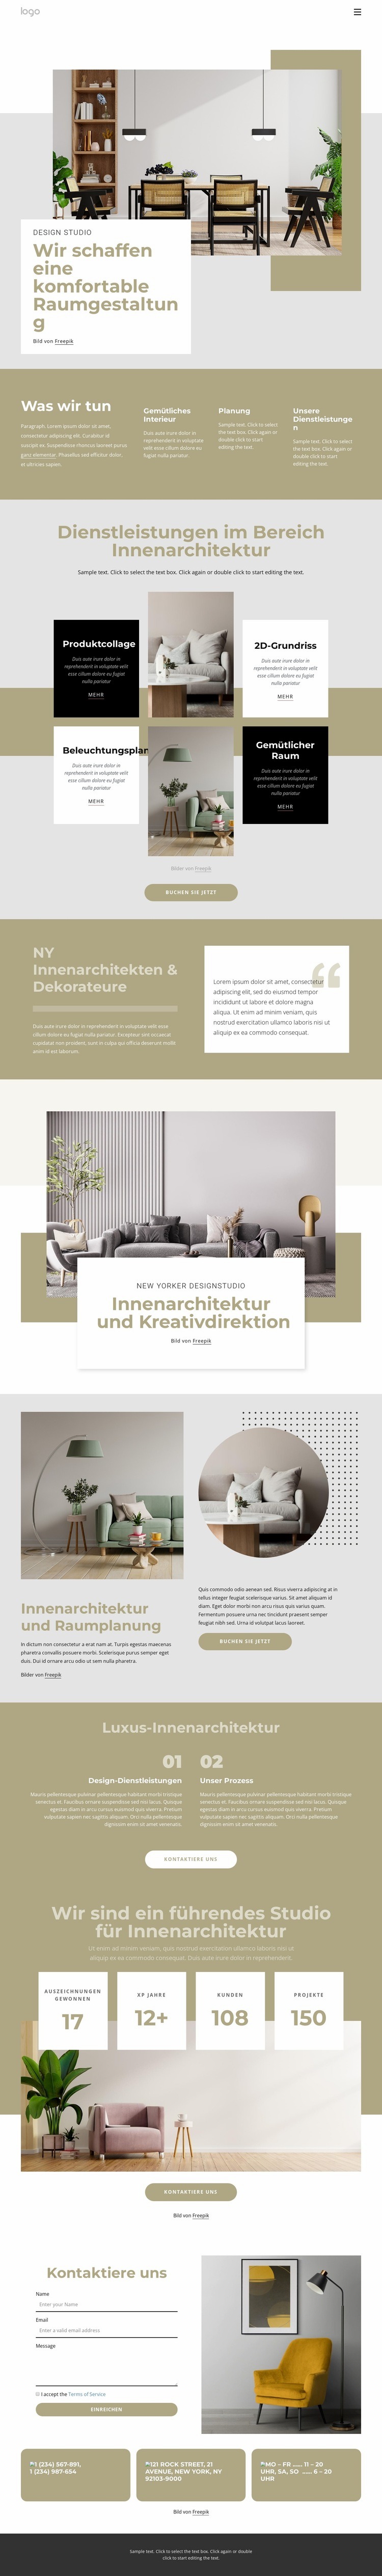 Wir schaffen ein komfortables Interieur Website design